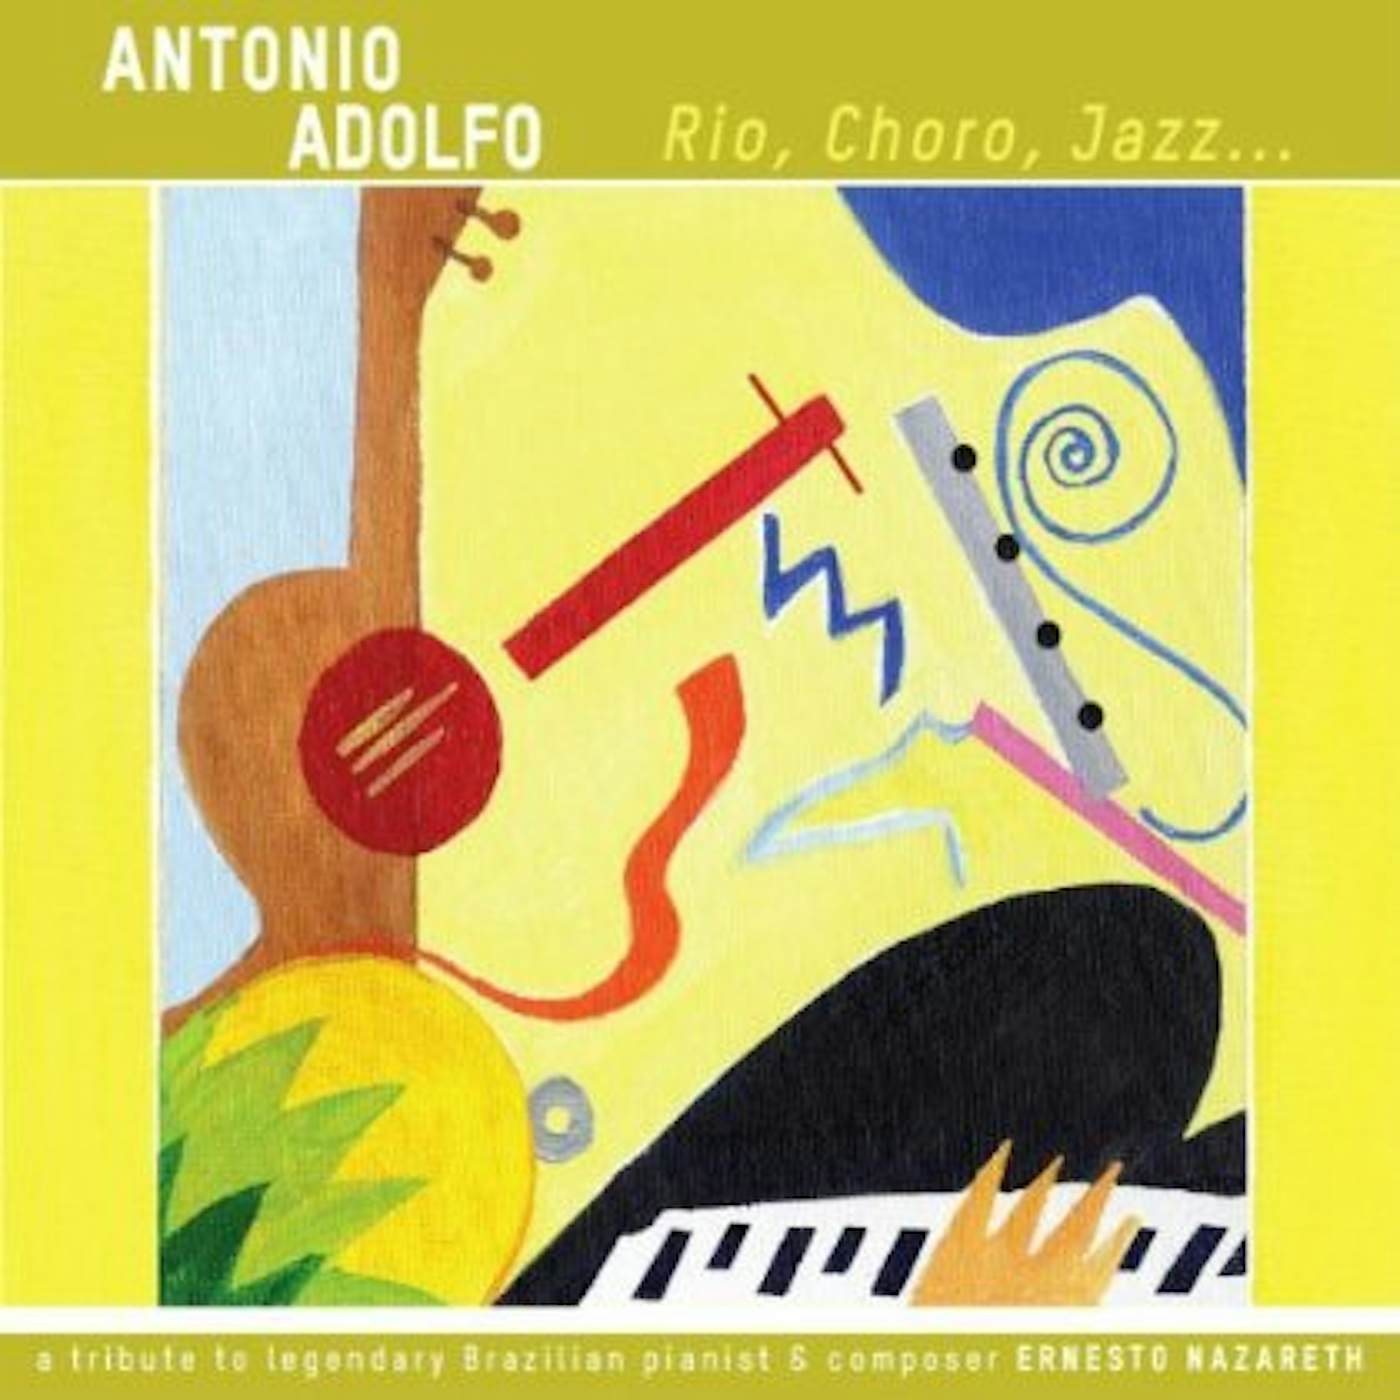 Antonio Adolfo RIO CHORO JAZZ CD